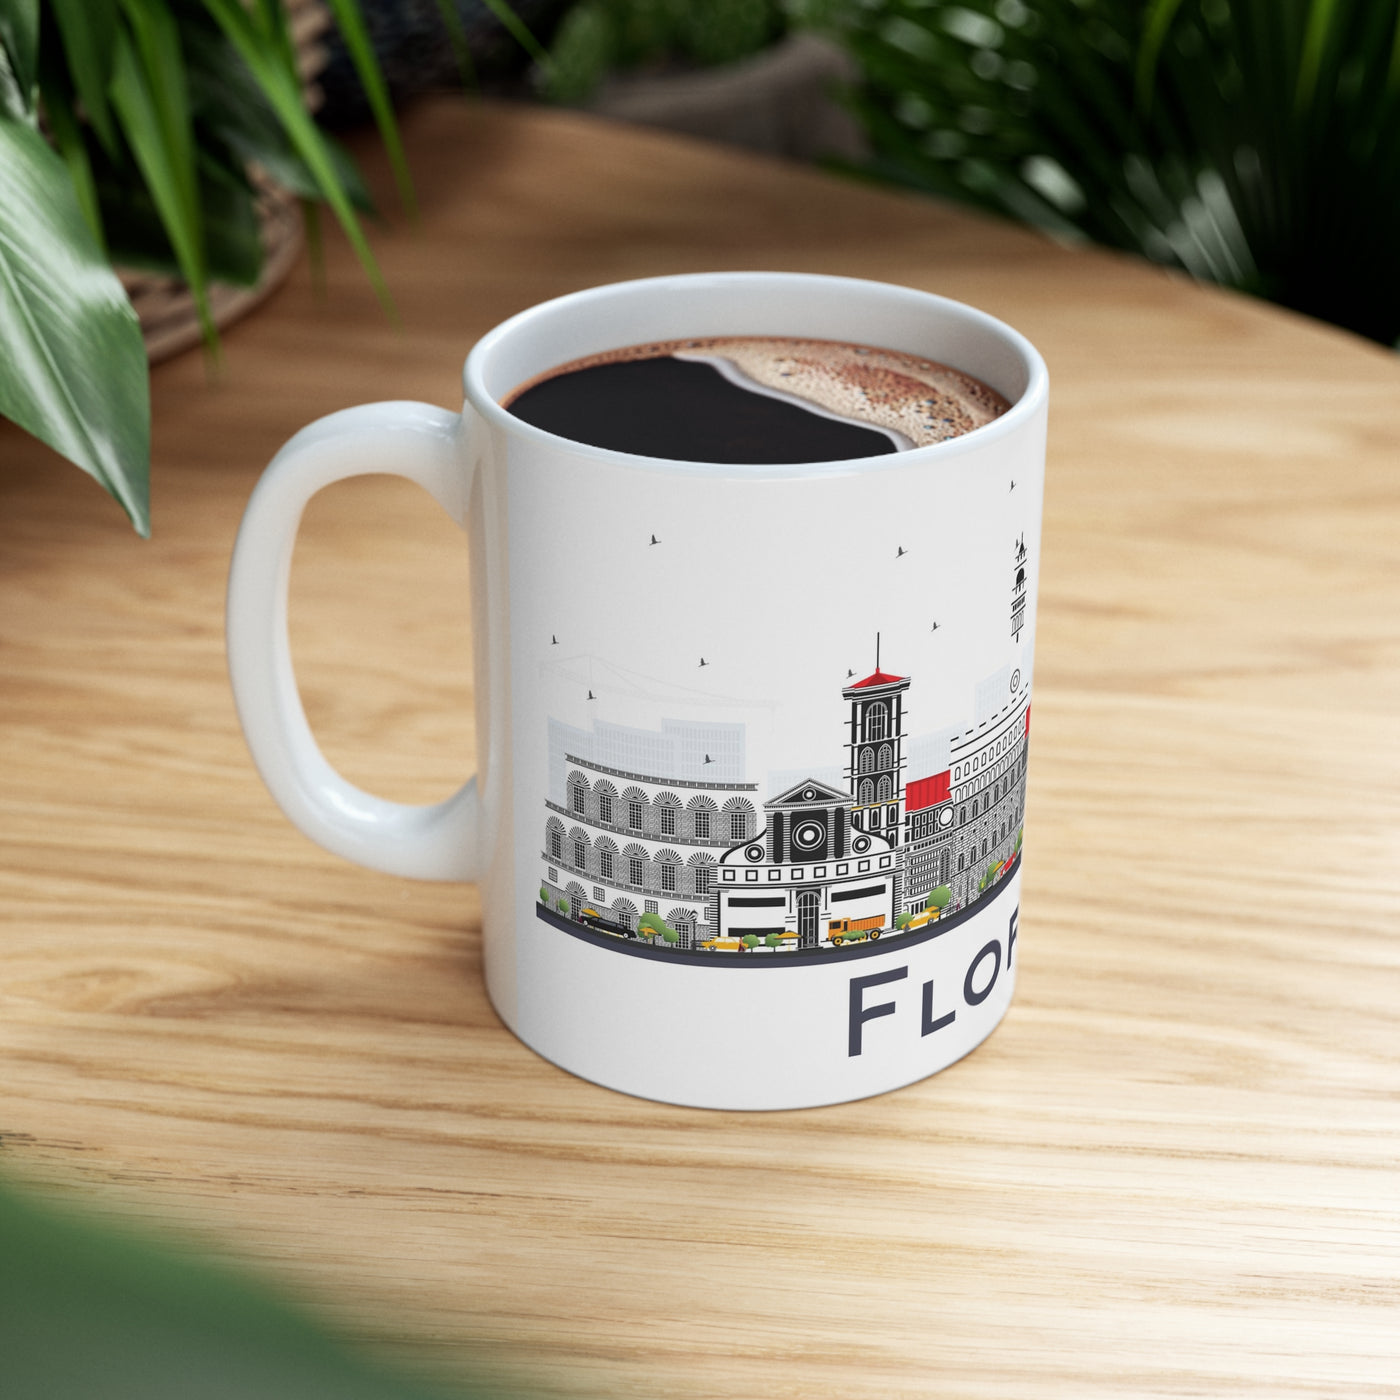 Florence Italy Coffee Mug